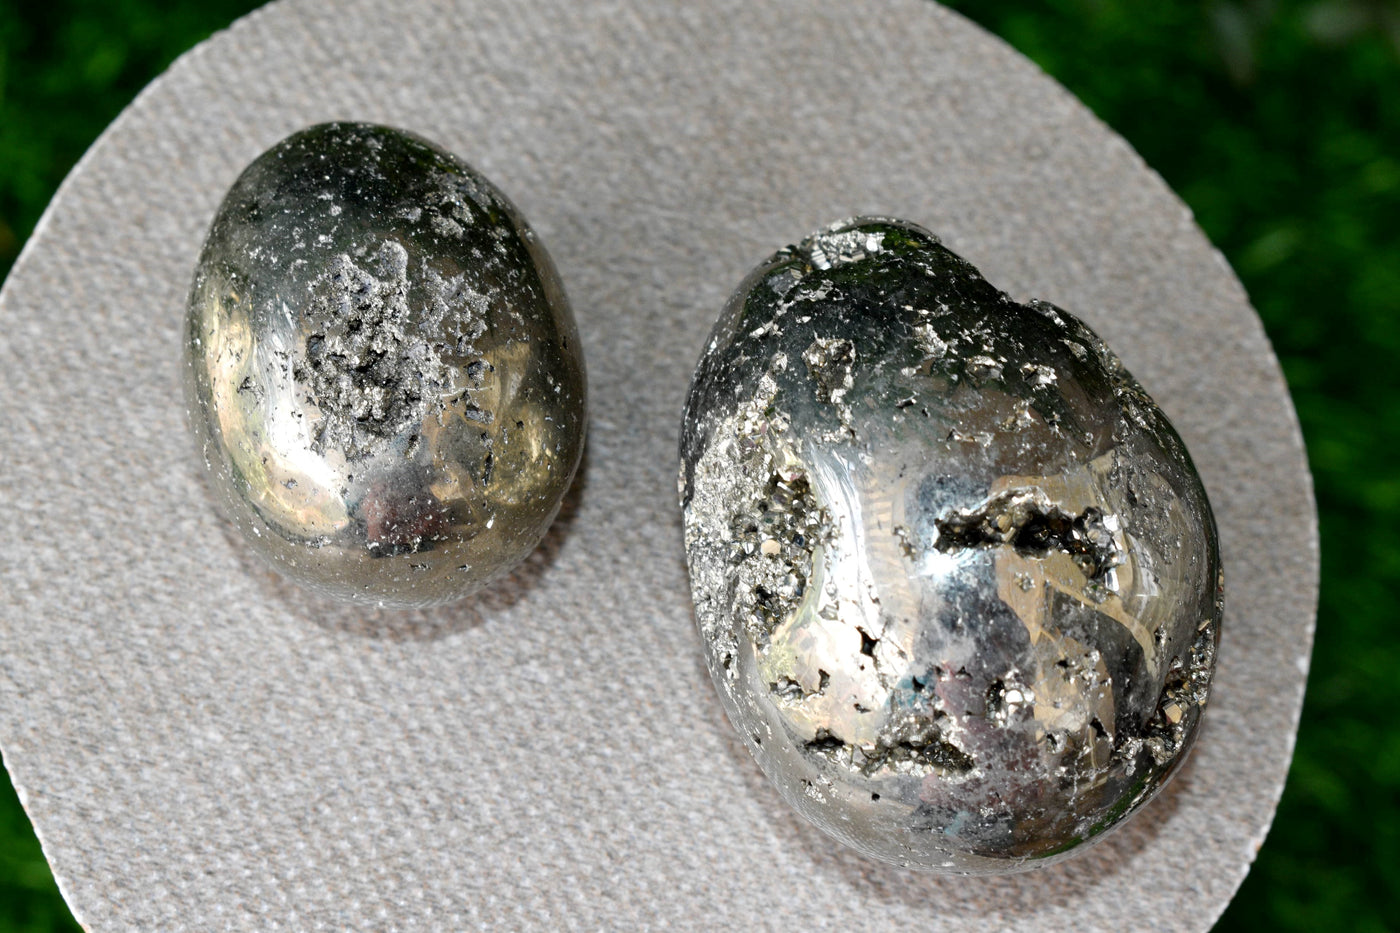 Pyrite Druzy Eggs Stone, Oeuf en cristal de pyrite ~ Pierre métaphysique brute naturelle